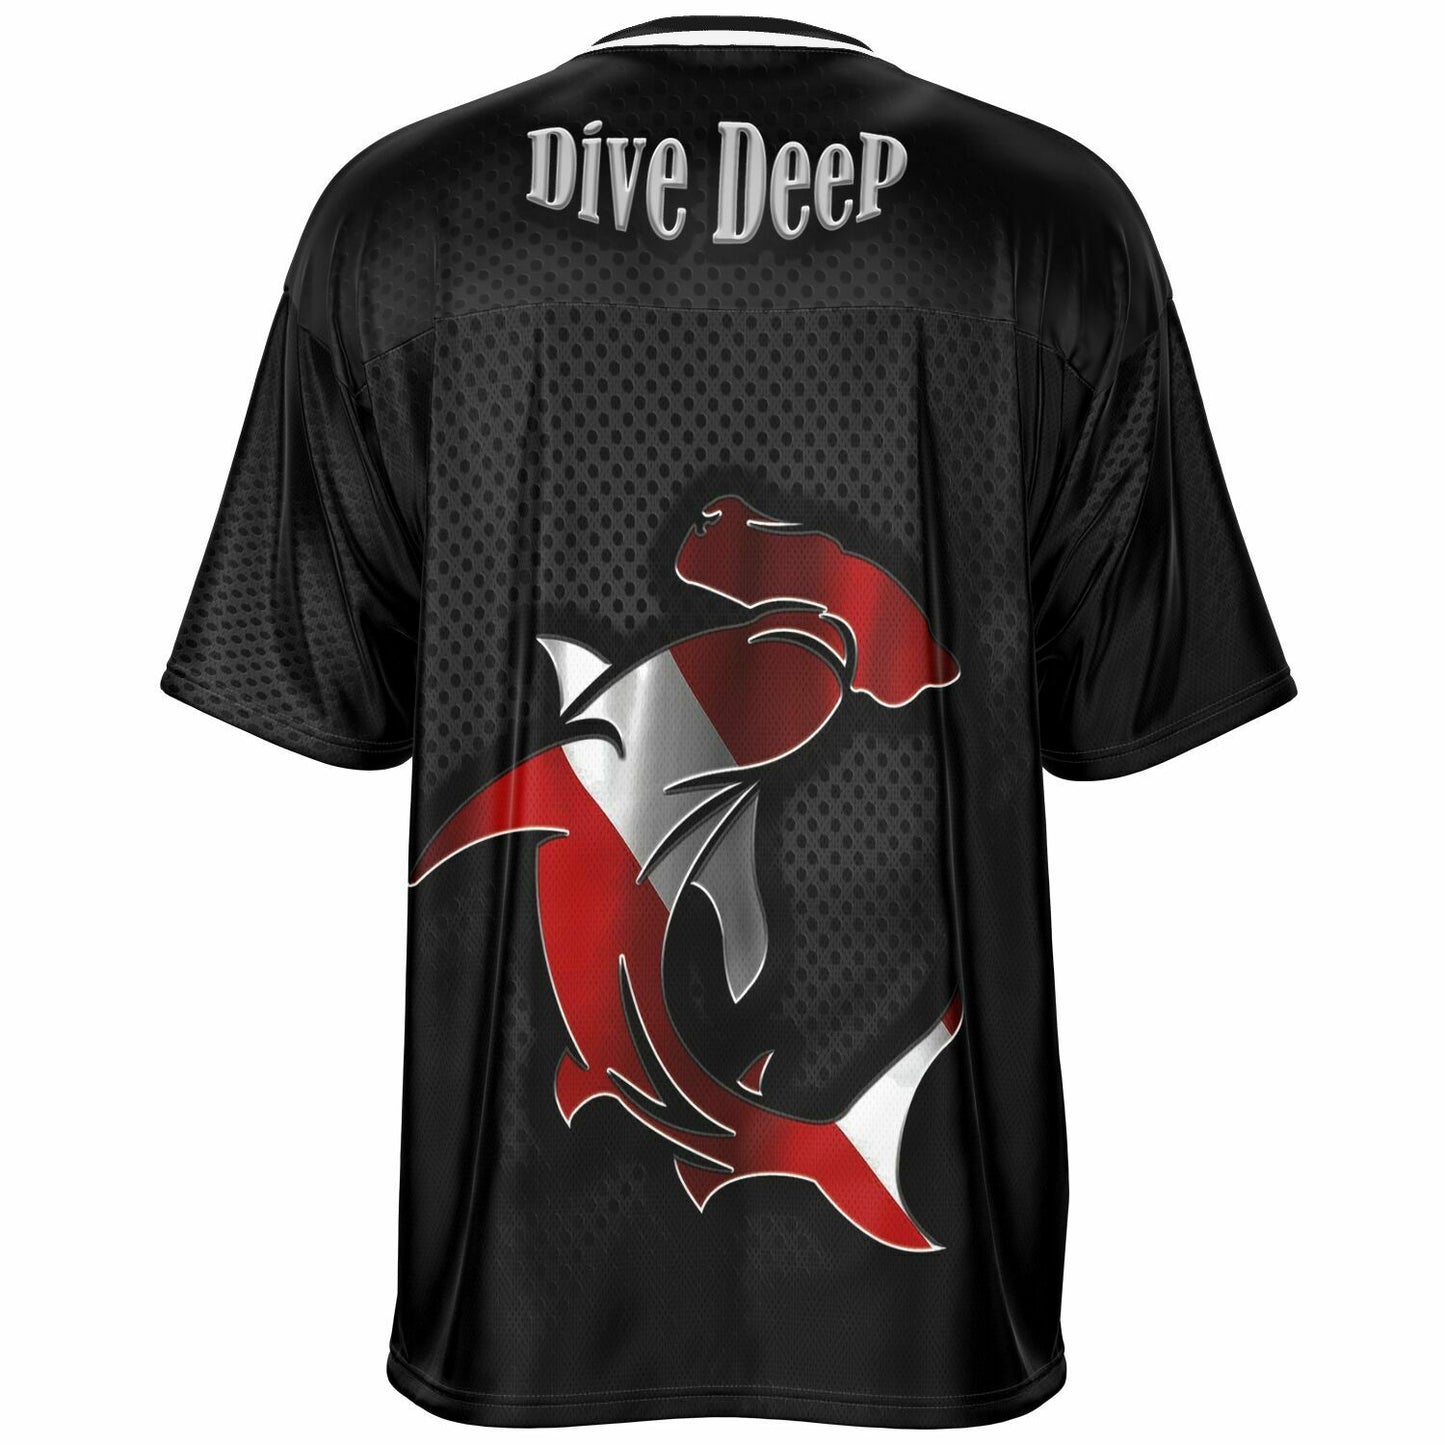 scuba diving apparel t shirts